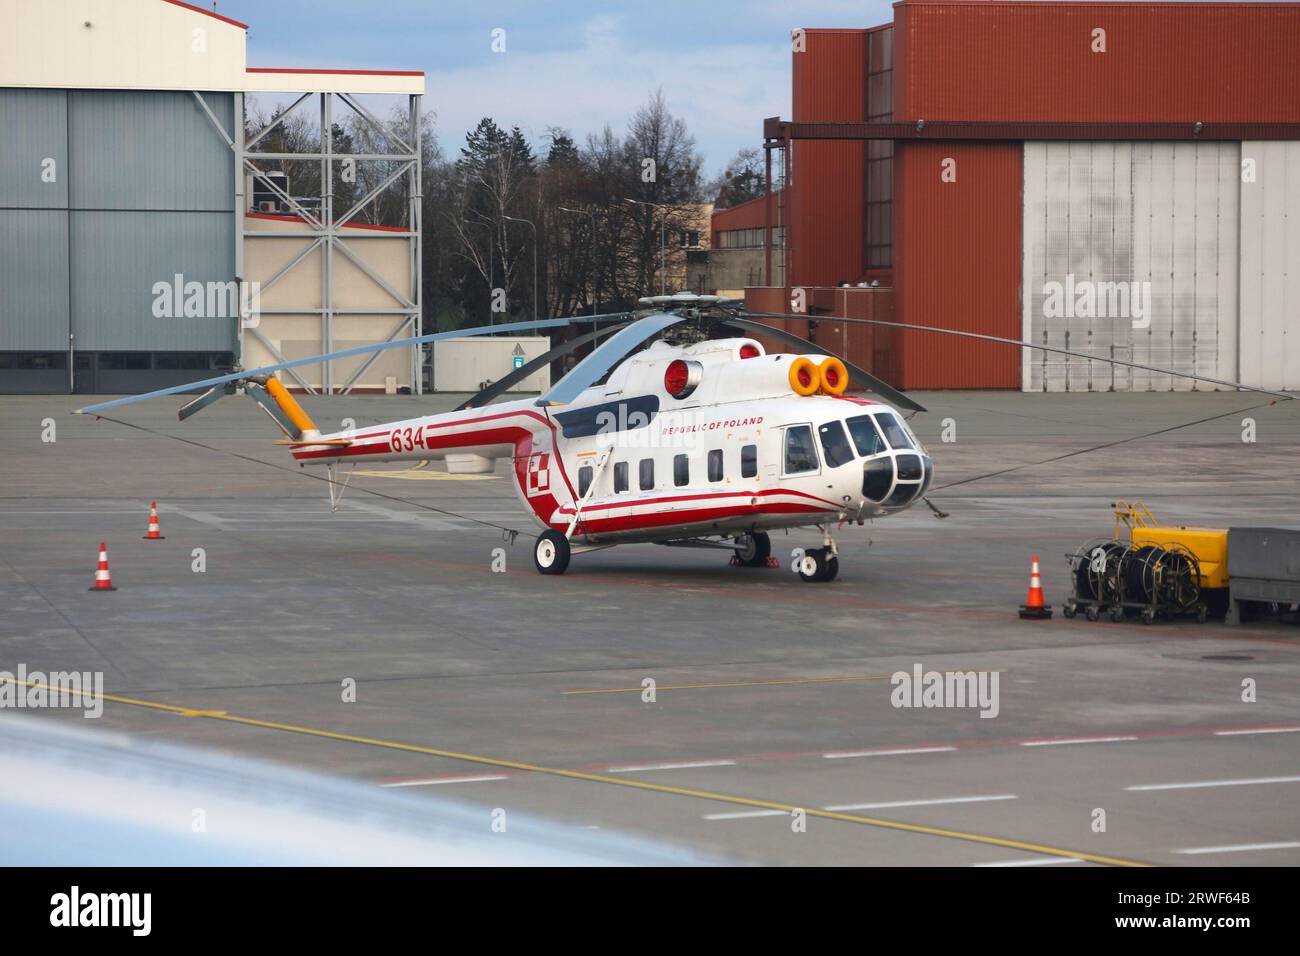 VARSAVIA, POLONIA - 12 APRILE 2023: Elicottero MIL mi-8 dell'aeronautica militare polacca presso l'aeroporto di Varsavia (codice IATA: WAW) in Polonia. Foto Stock